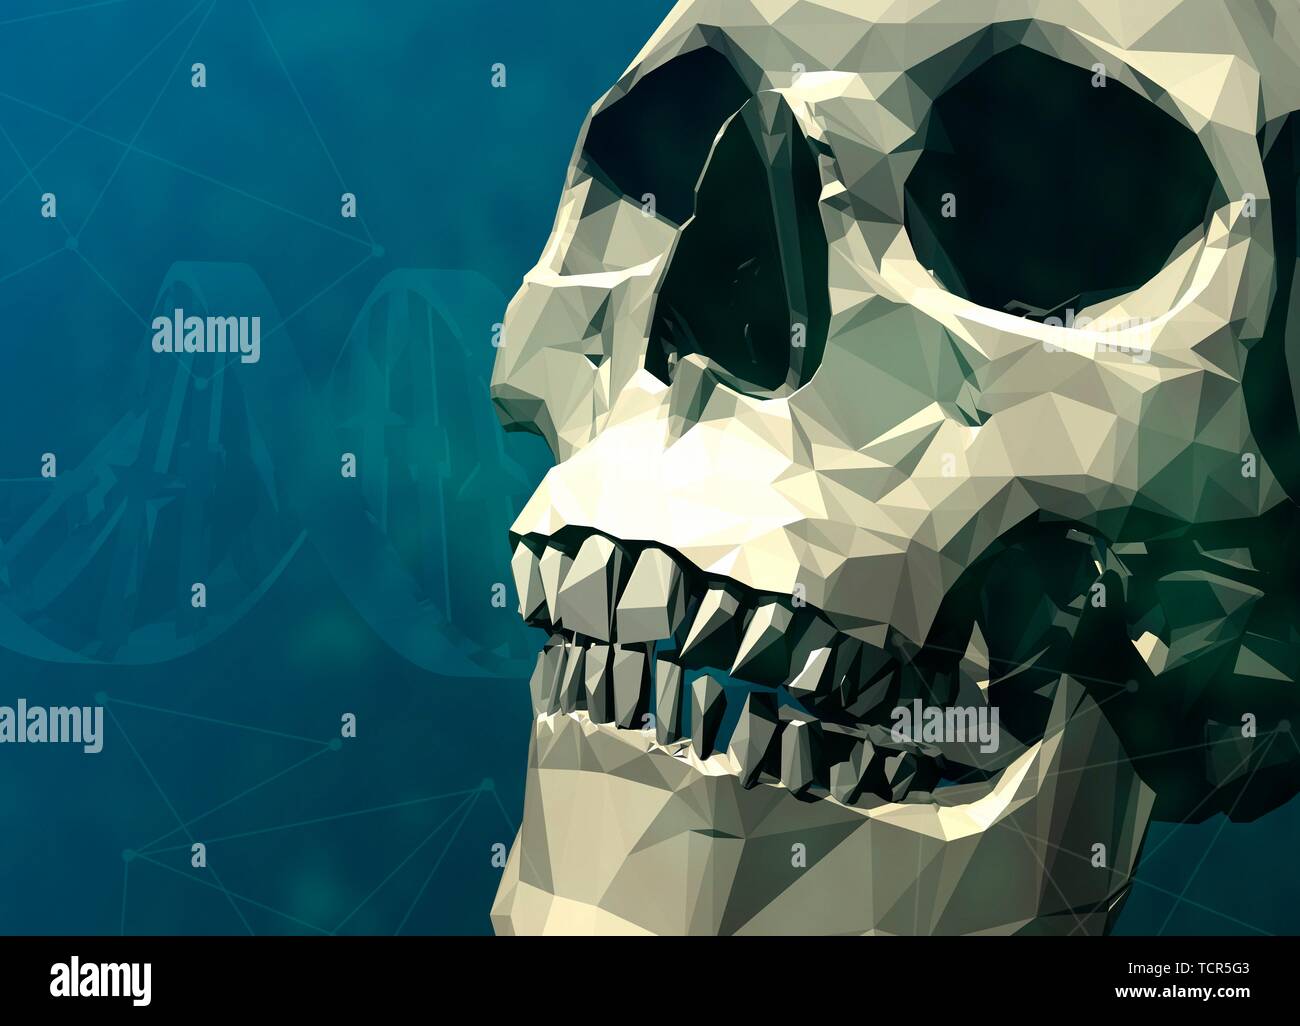 Human skull, illustration Stock Photo